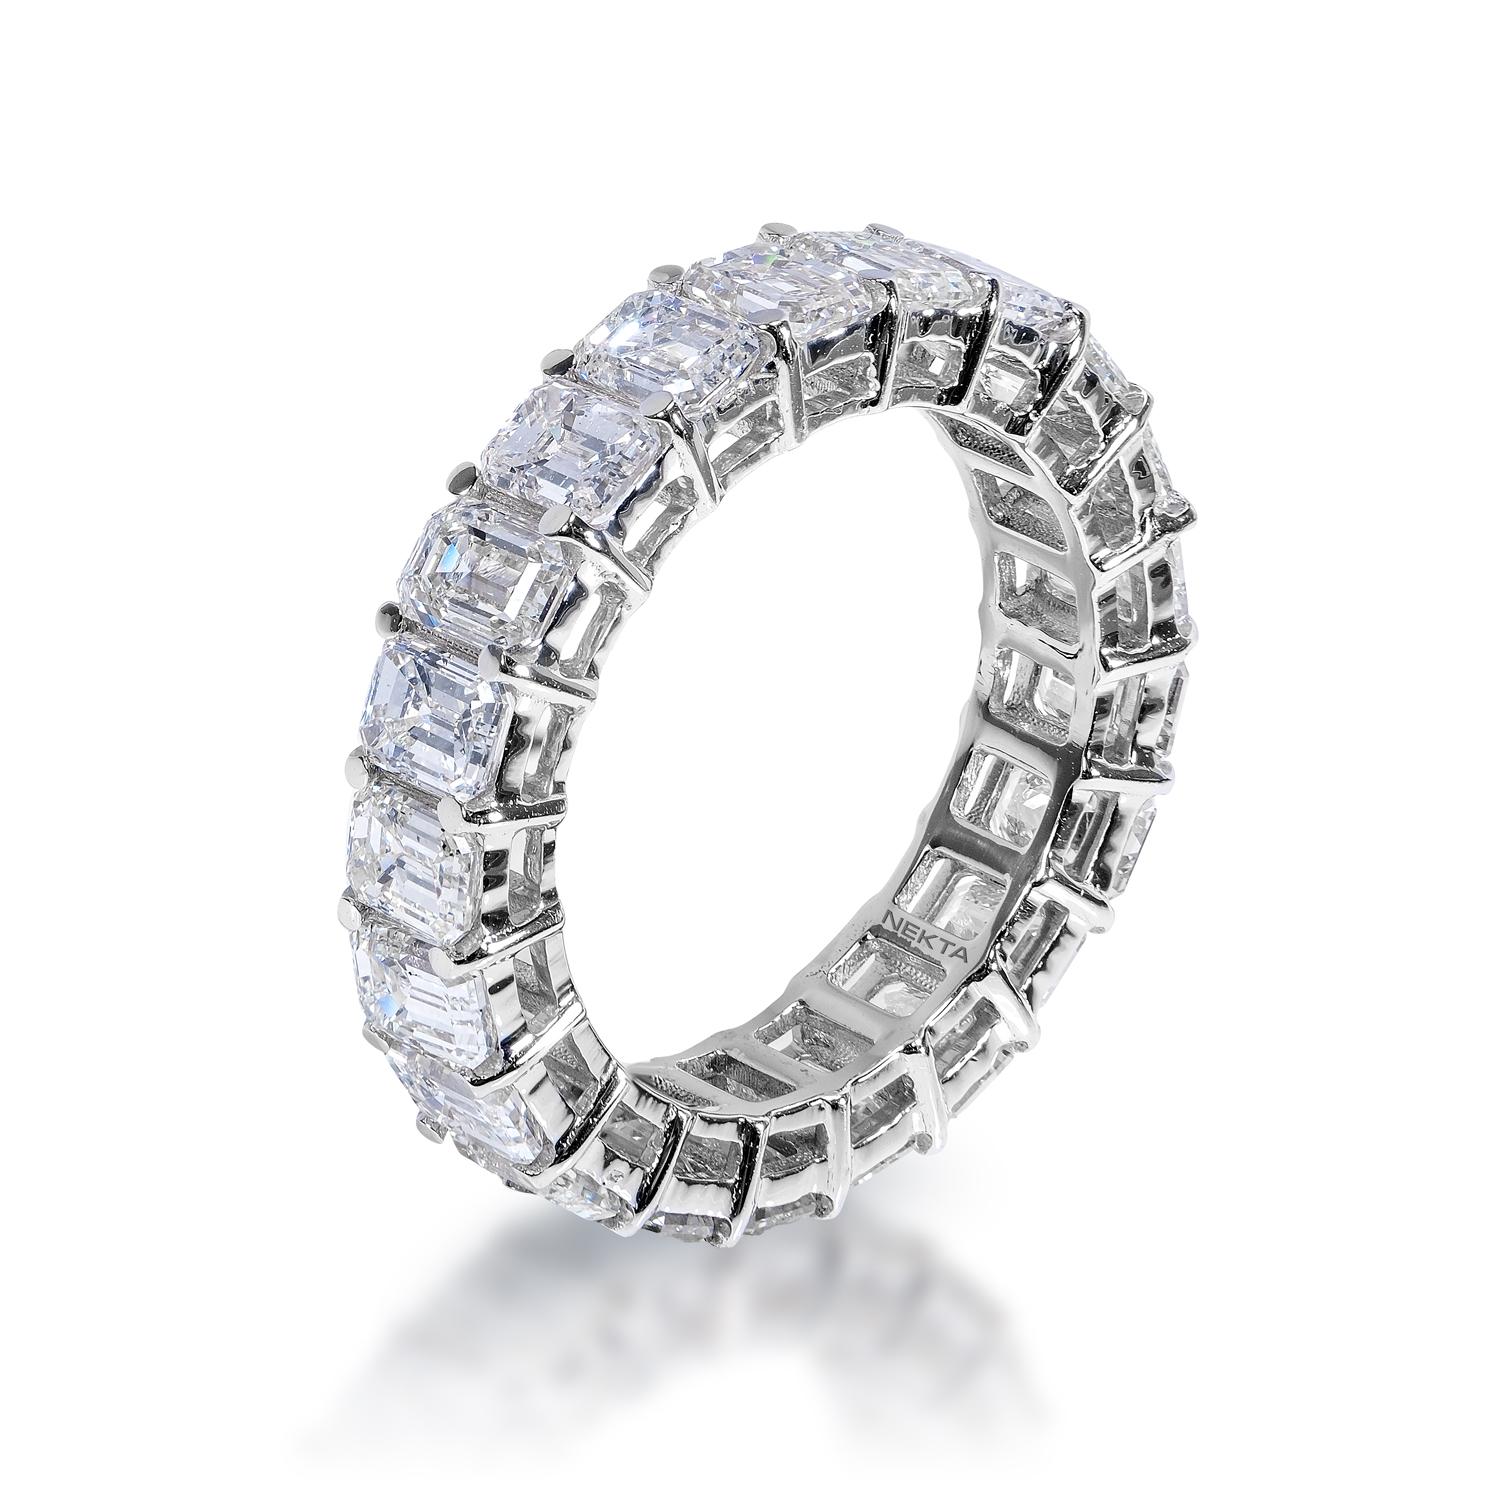 Bracelet d'éternité Diamant :
Poids en carats : 4.98 carats
Style : Coupe émeraude

Réglage : Prongée partagée
Métal :  Or blanc 14 carats

Poids total en carats : 4,98 carats